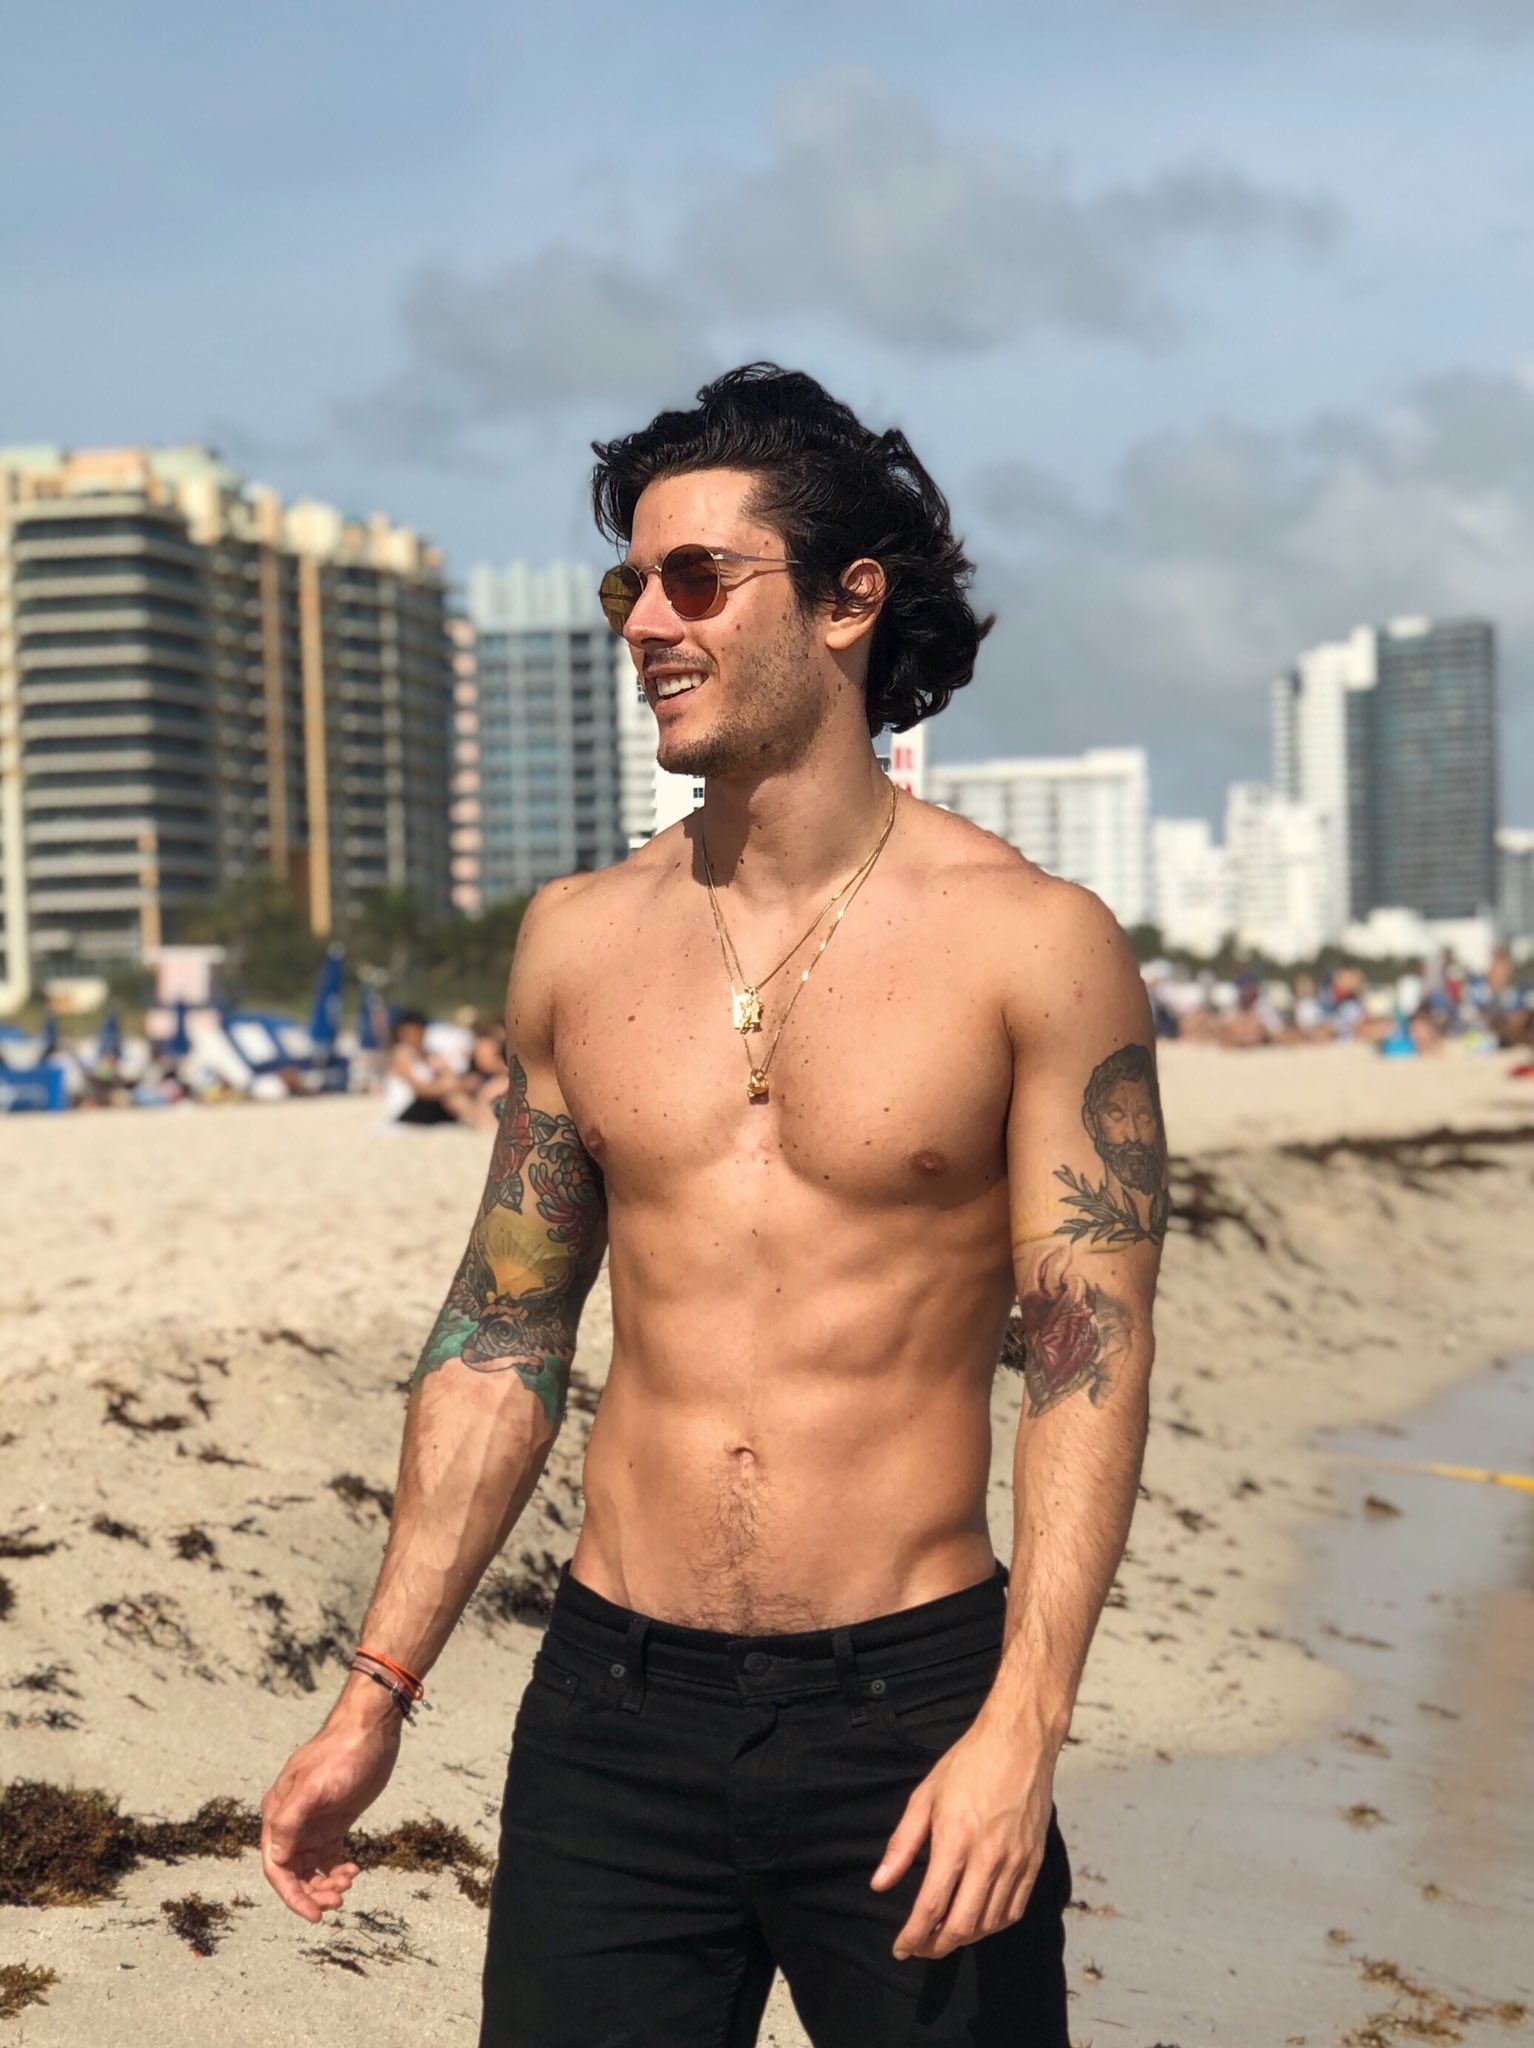 Diego Barrueco on X: "Miami i love you. https://t.co/tyN1IBgTtq" / X